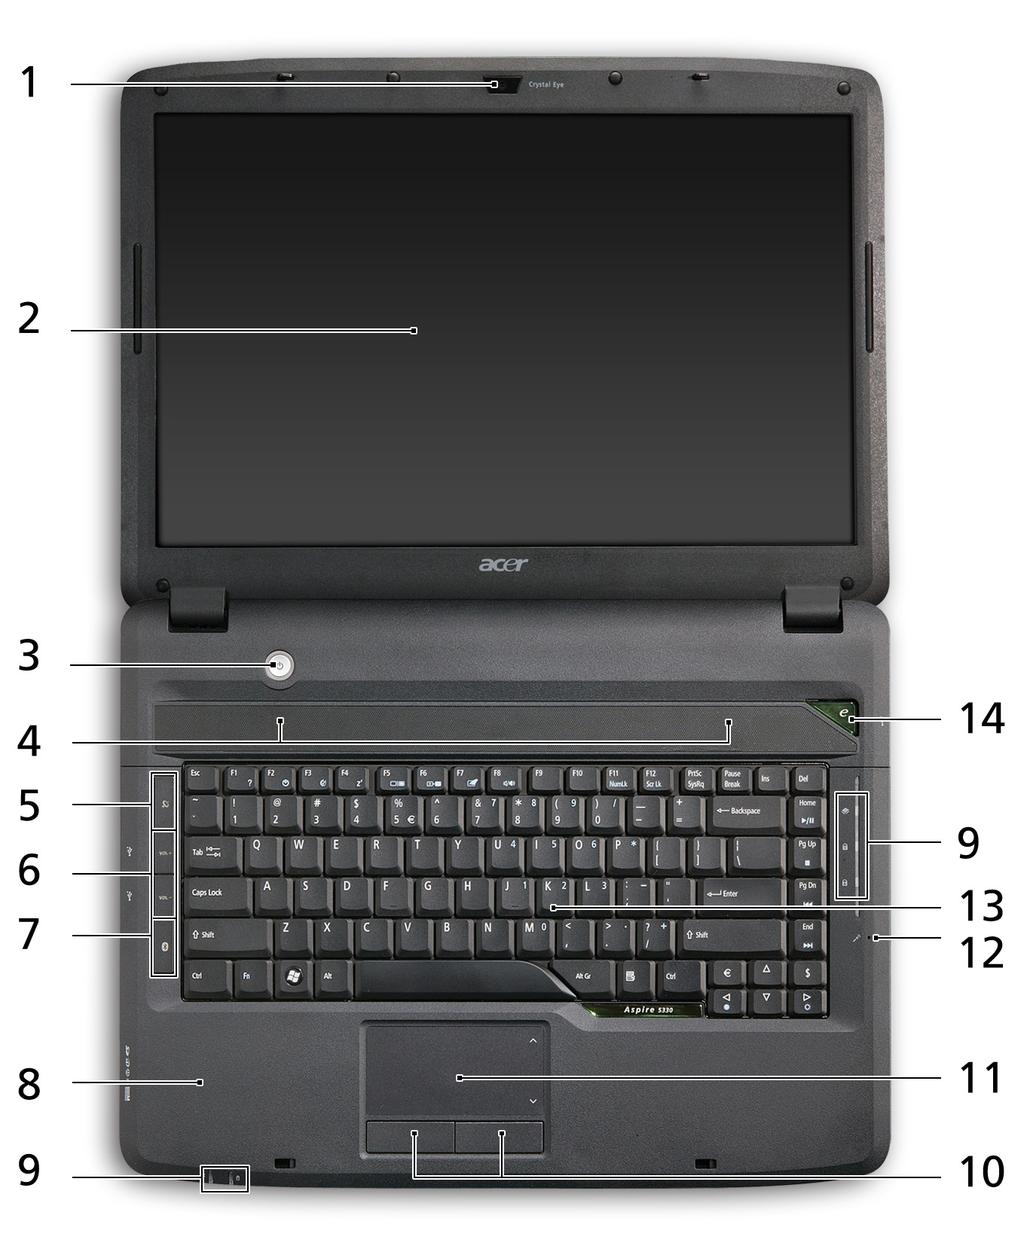 4 Tentang notebook Acer Setelah mempersiapkan komputer seperti pada gambar dalam brosur